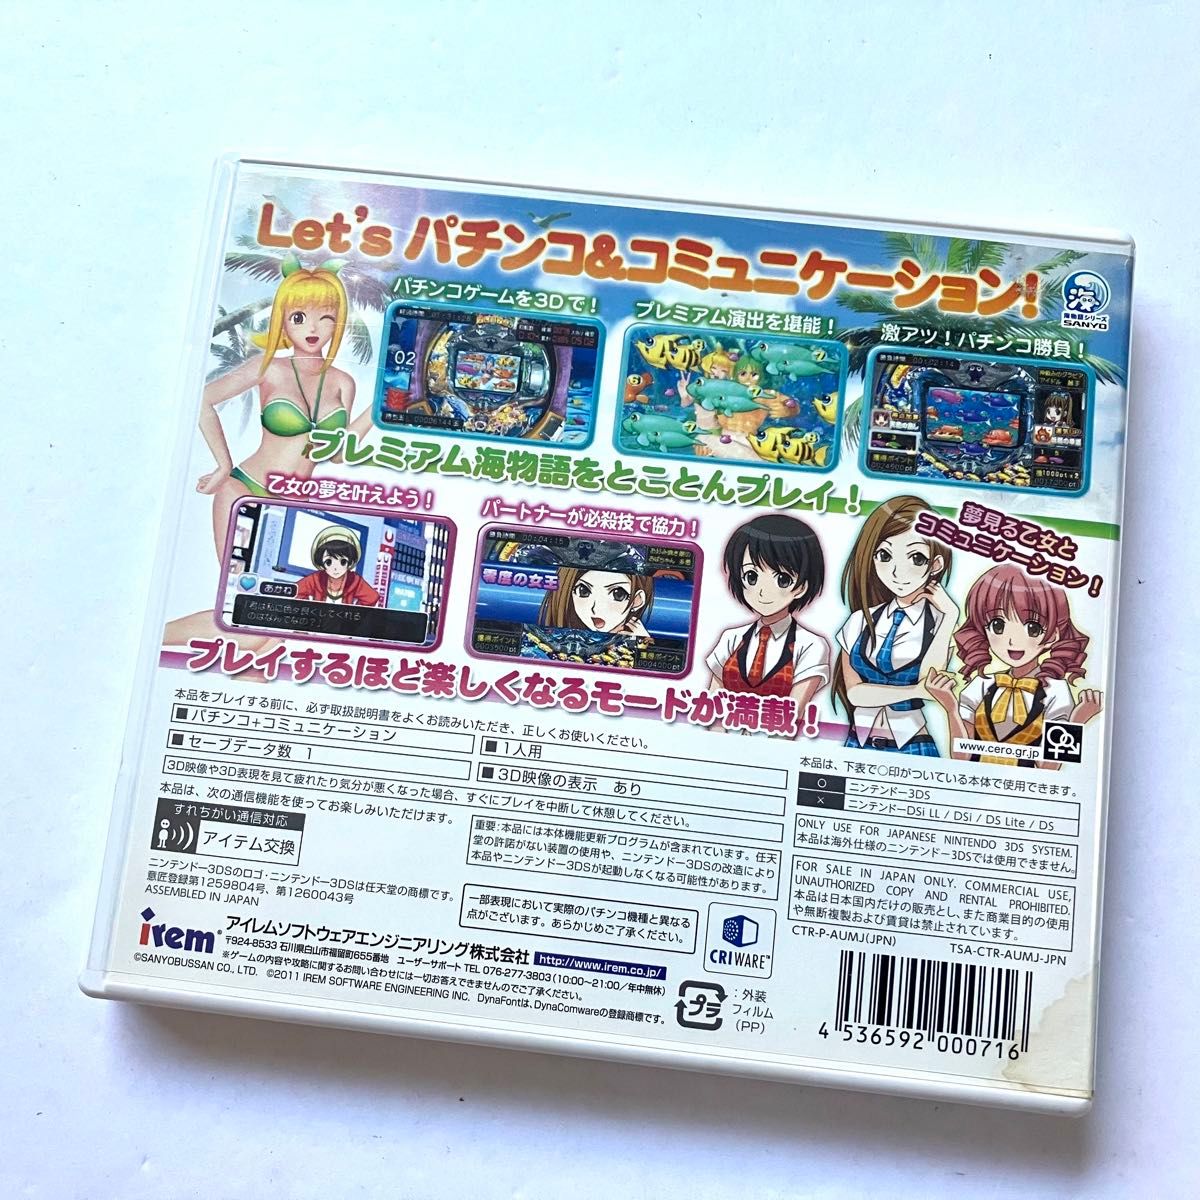 【レア】3DS パチパラ3D プレミアム海物語 夢見る乙女とパチンコ王決定戦